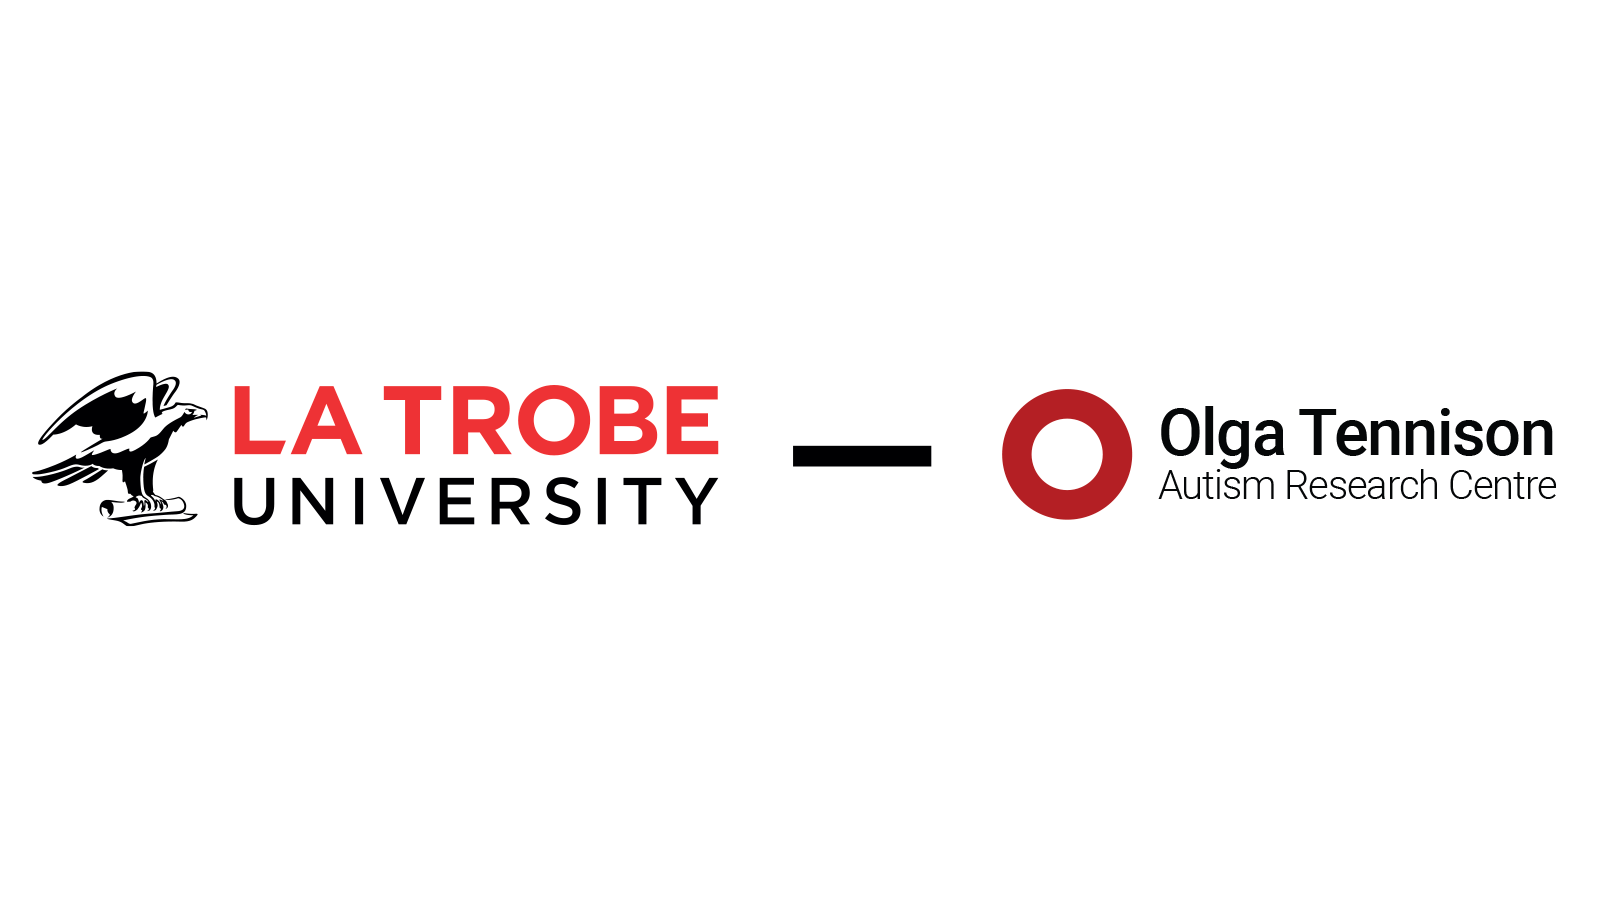 La Trobe University logo and Olga Tennison Autism Research centre logo next to eachother.